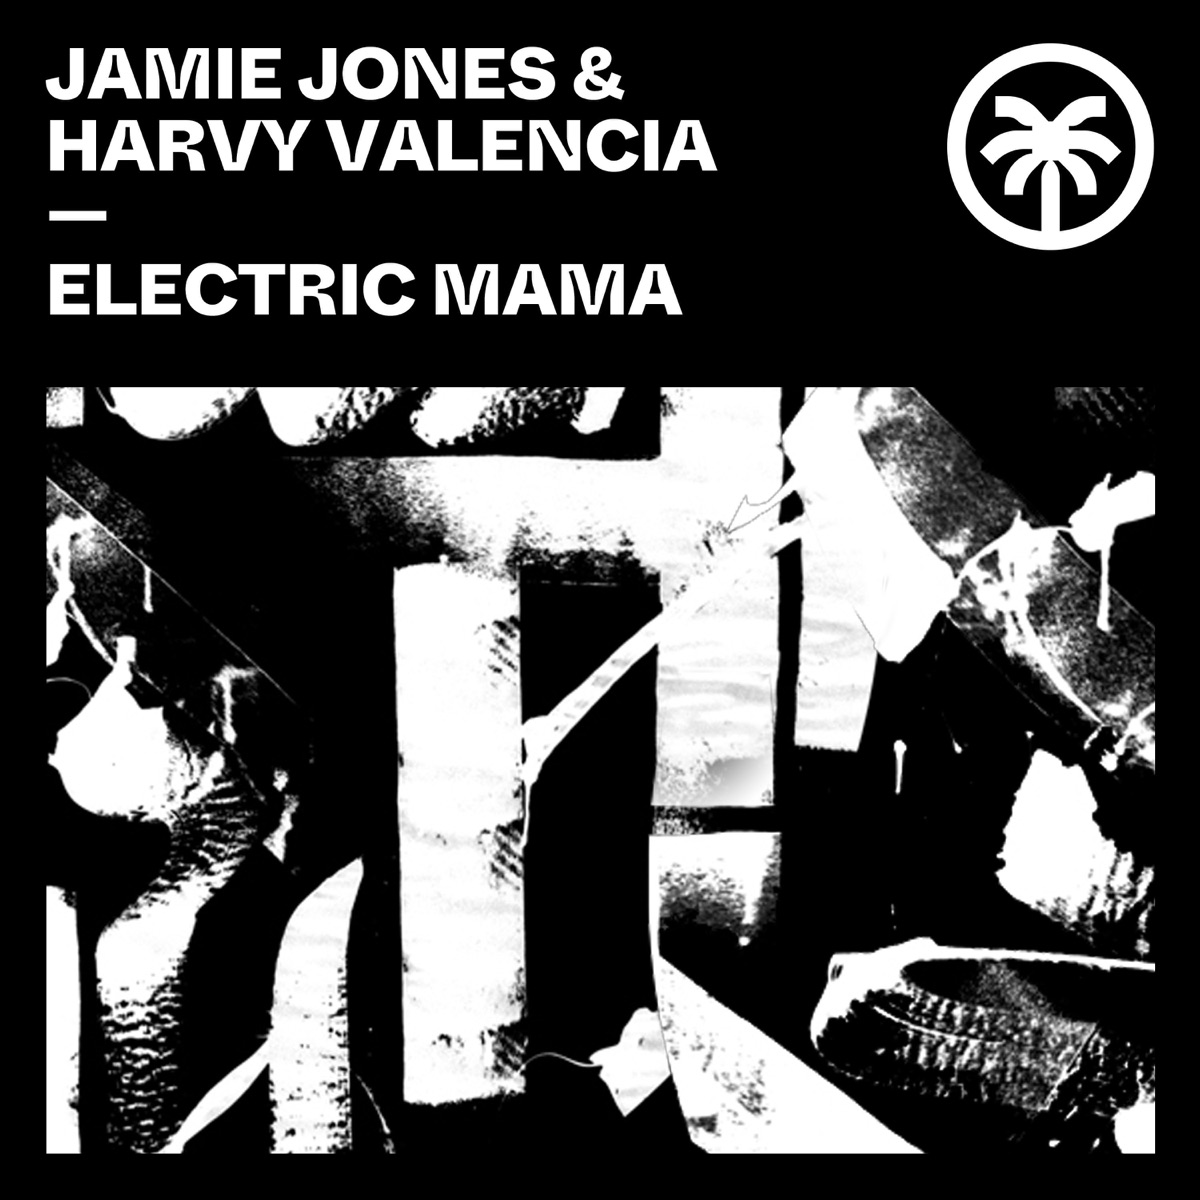 Electric Mama - Single – álbum de Harvy Valencia & Jamie Jones